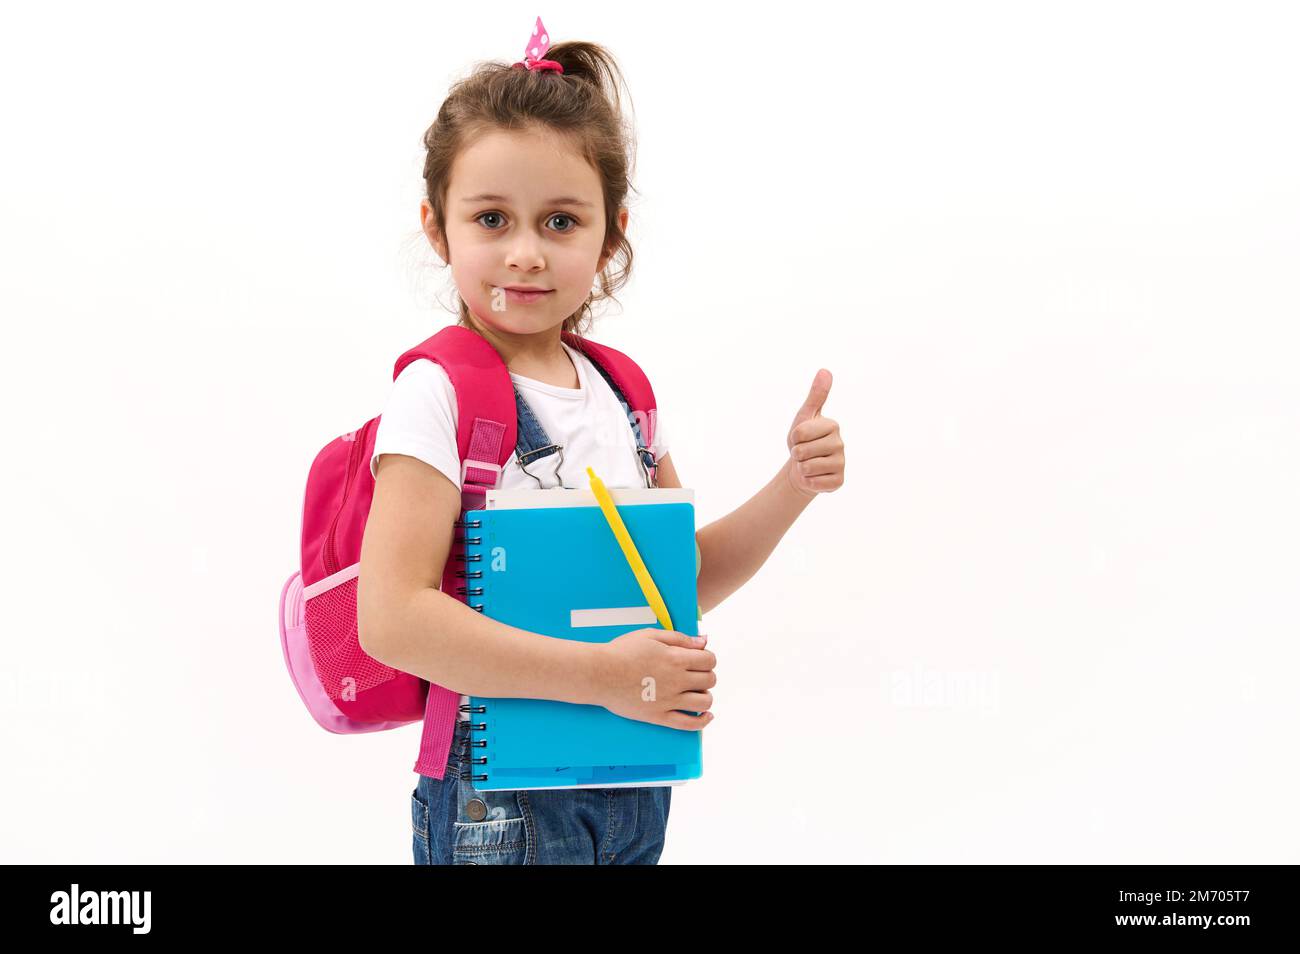 Adorable niña de 5-6 años con mochila rosa, sosteniendo libro de